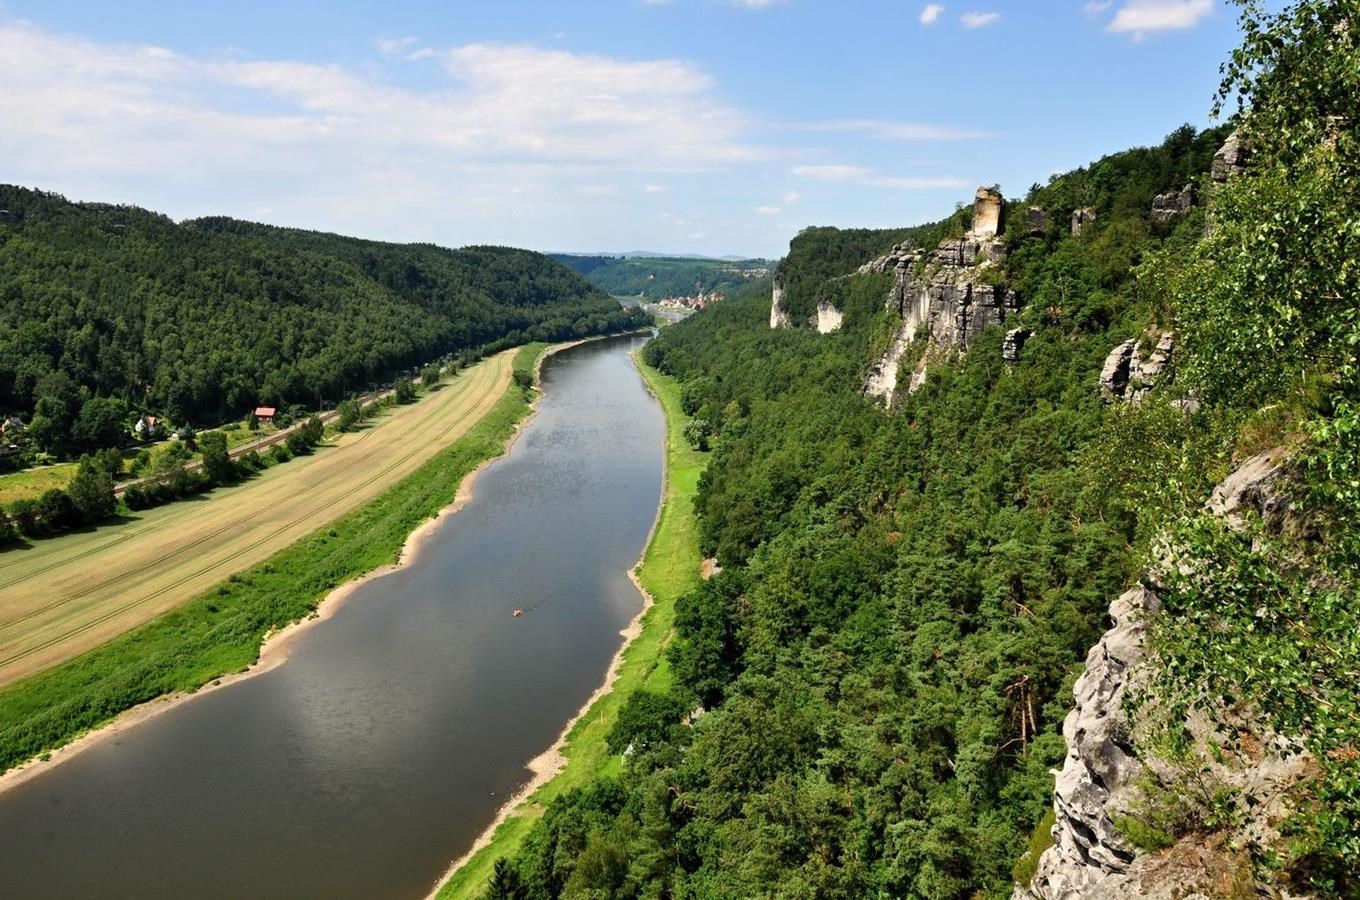 Řeka Labe - jedna z největších řek a vodních cest Evropy